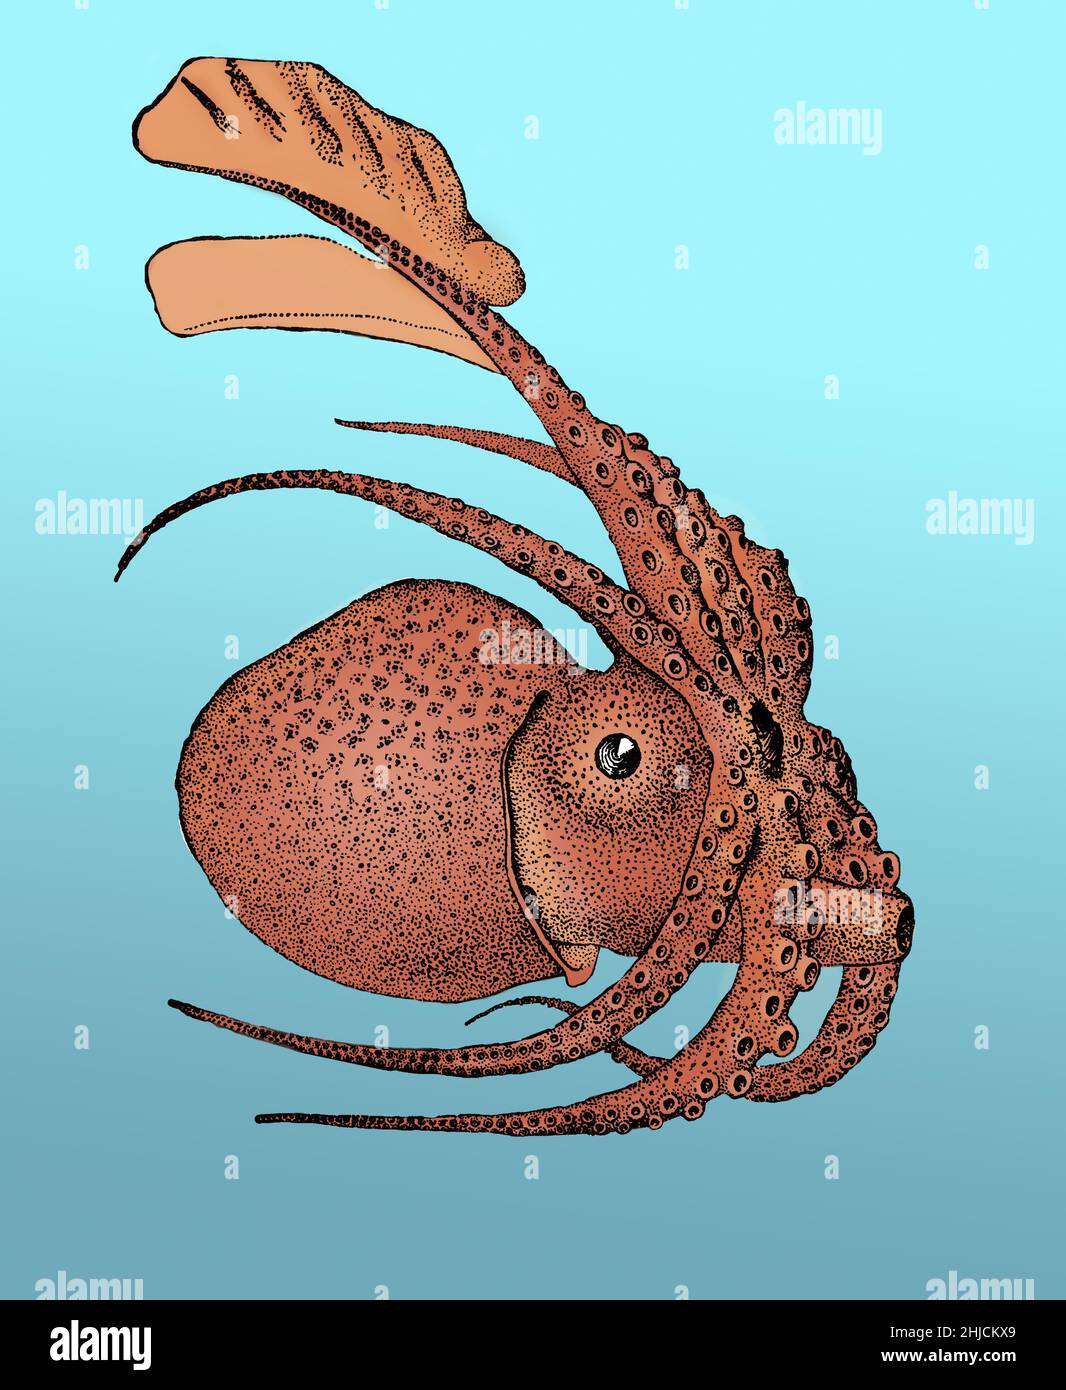 Argonauta argo, également connu sous le nom de Grand argonaut, est une espèce d'octopus pélagique appartenant au genre Argonauta.Argonauta argo est cosmopolite et se trouve dans les eaux tropicales et subtropicales du monde entier.Couleurs améliorées. Banque D'Images